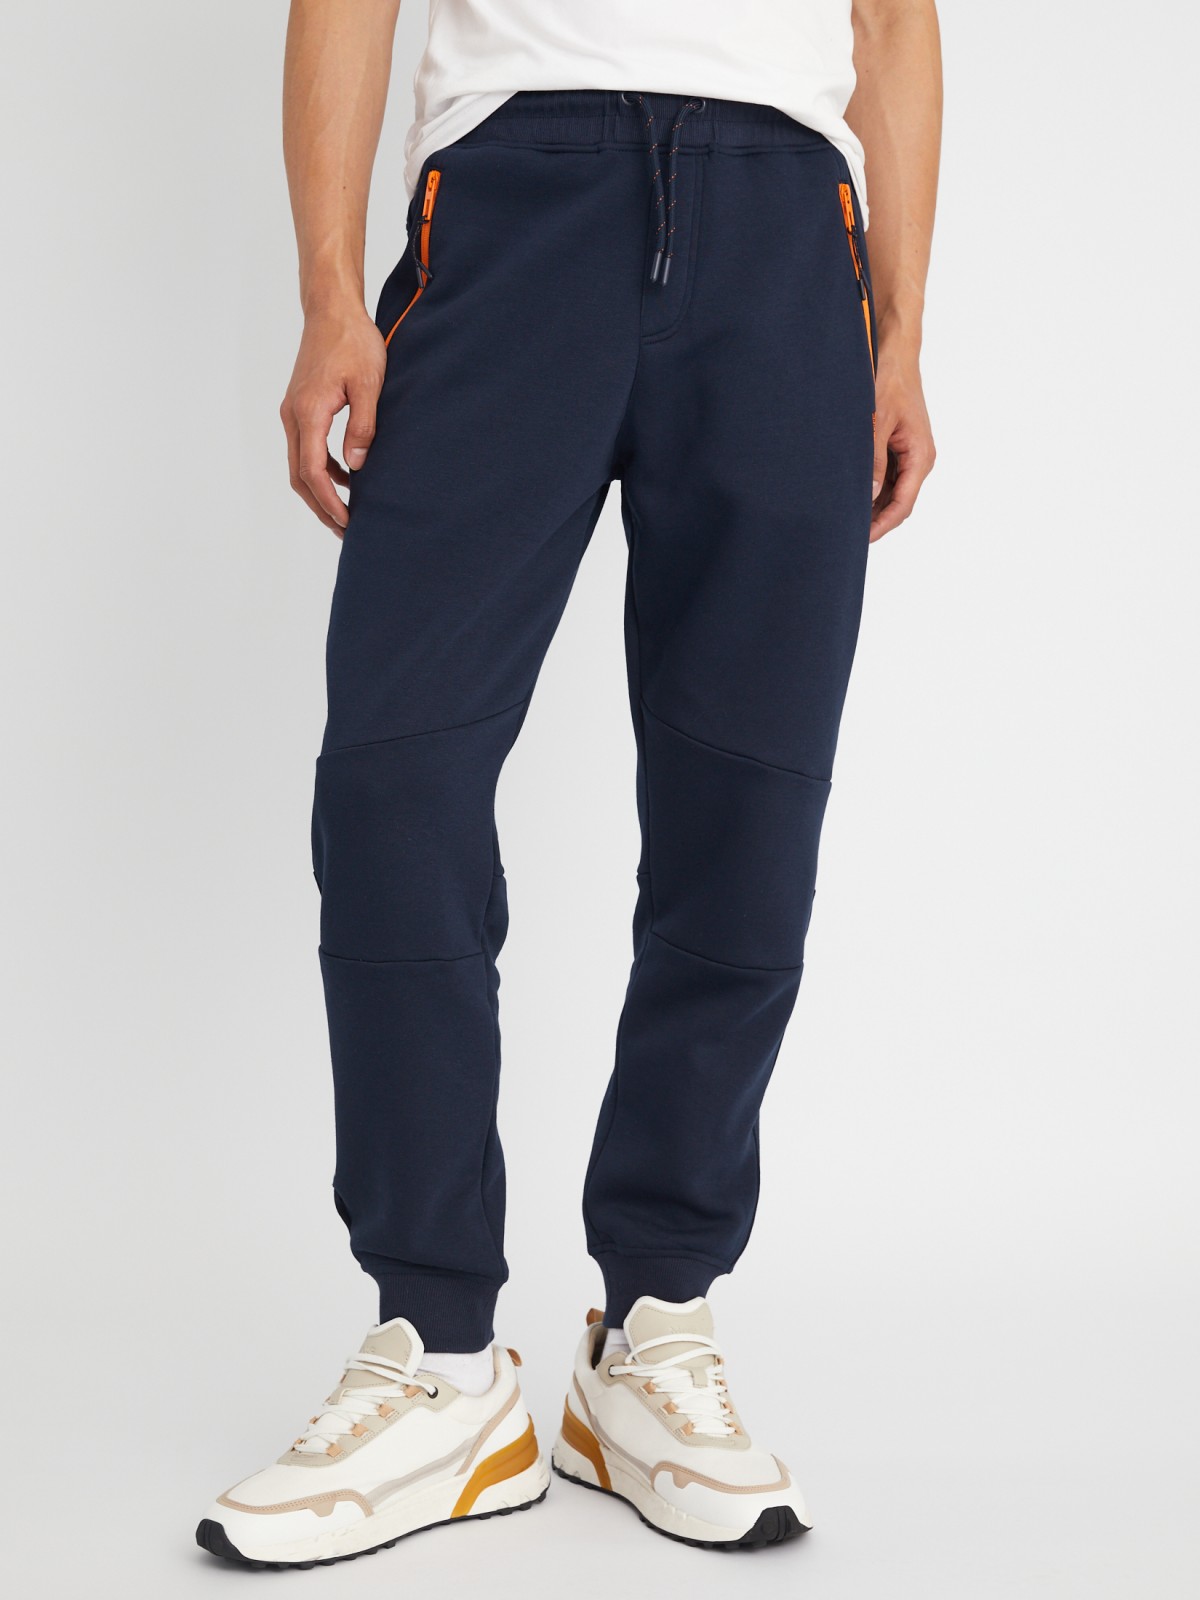 Утеплённые трикотажные брюки-джоггеры в спортивном стиле zolla 21333762F033, цвет синий, размер L - фото 4